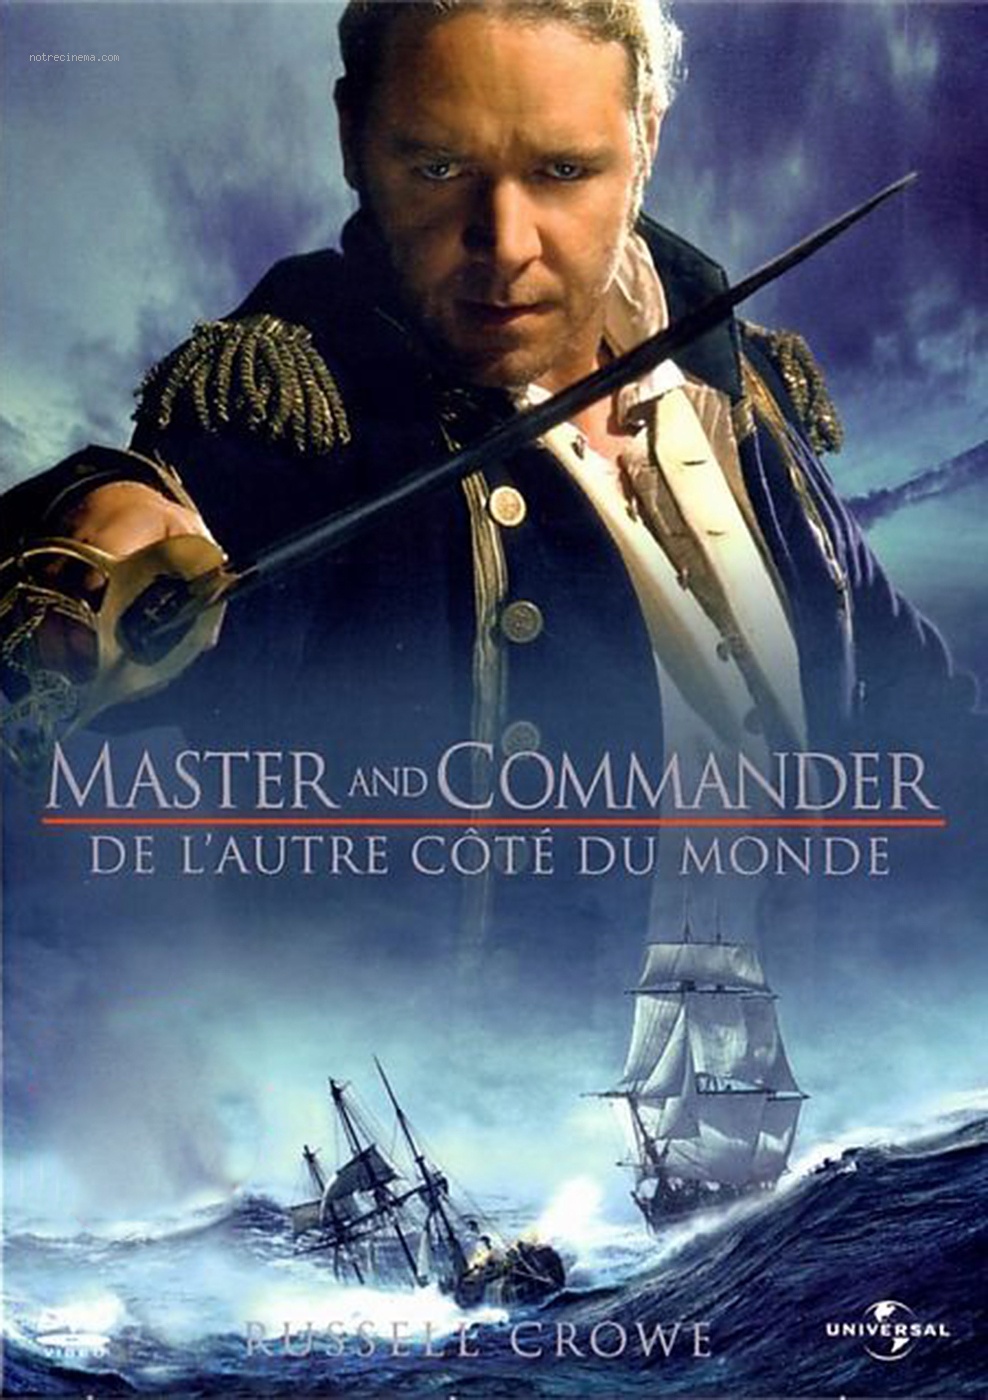 master-and-commander-_-de-l-autre-cote-du-monde-poster_368300_2984.jpg